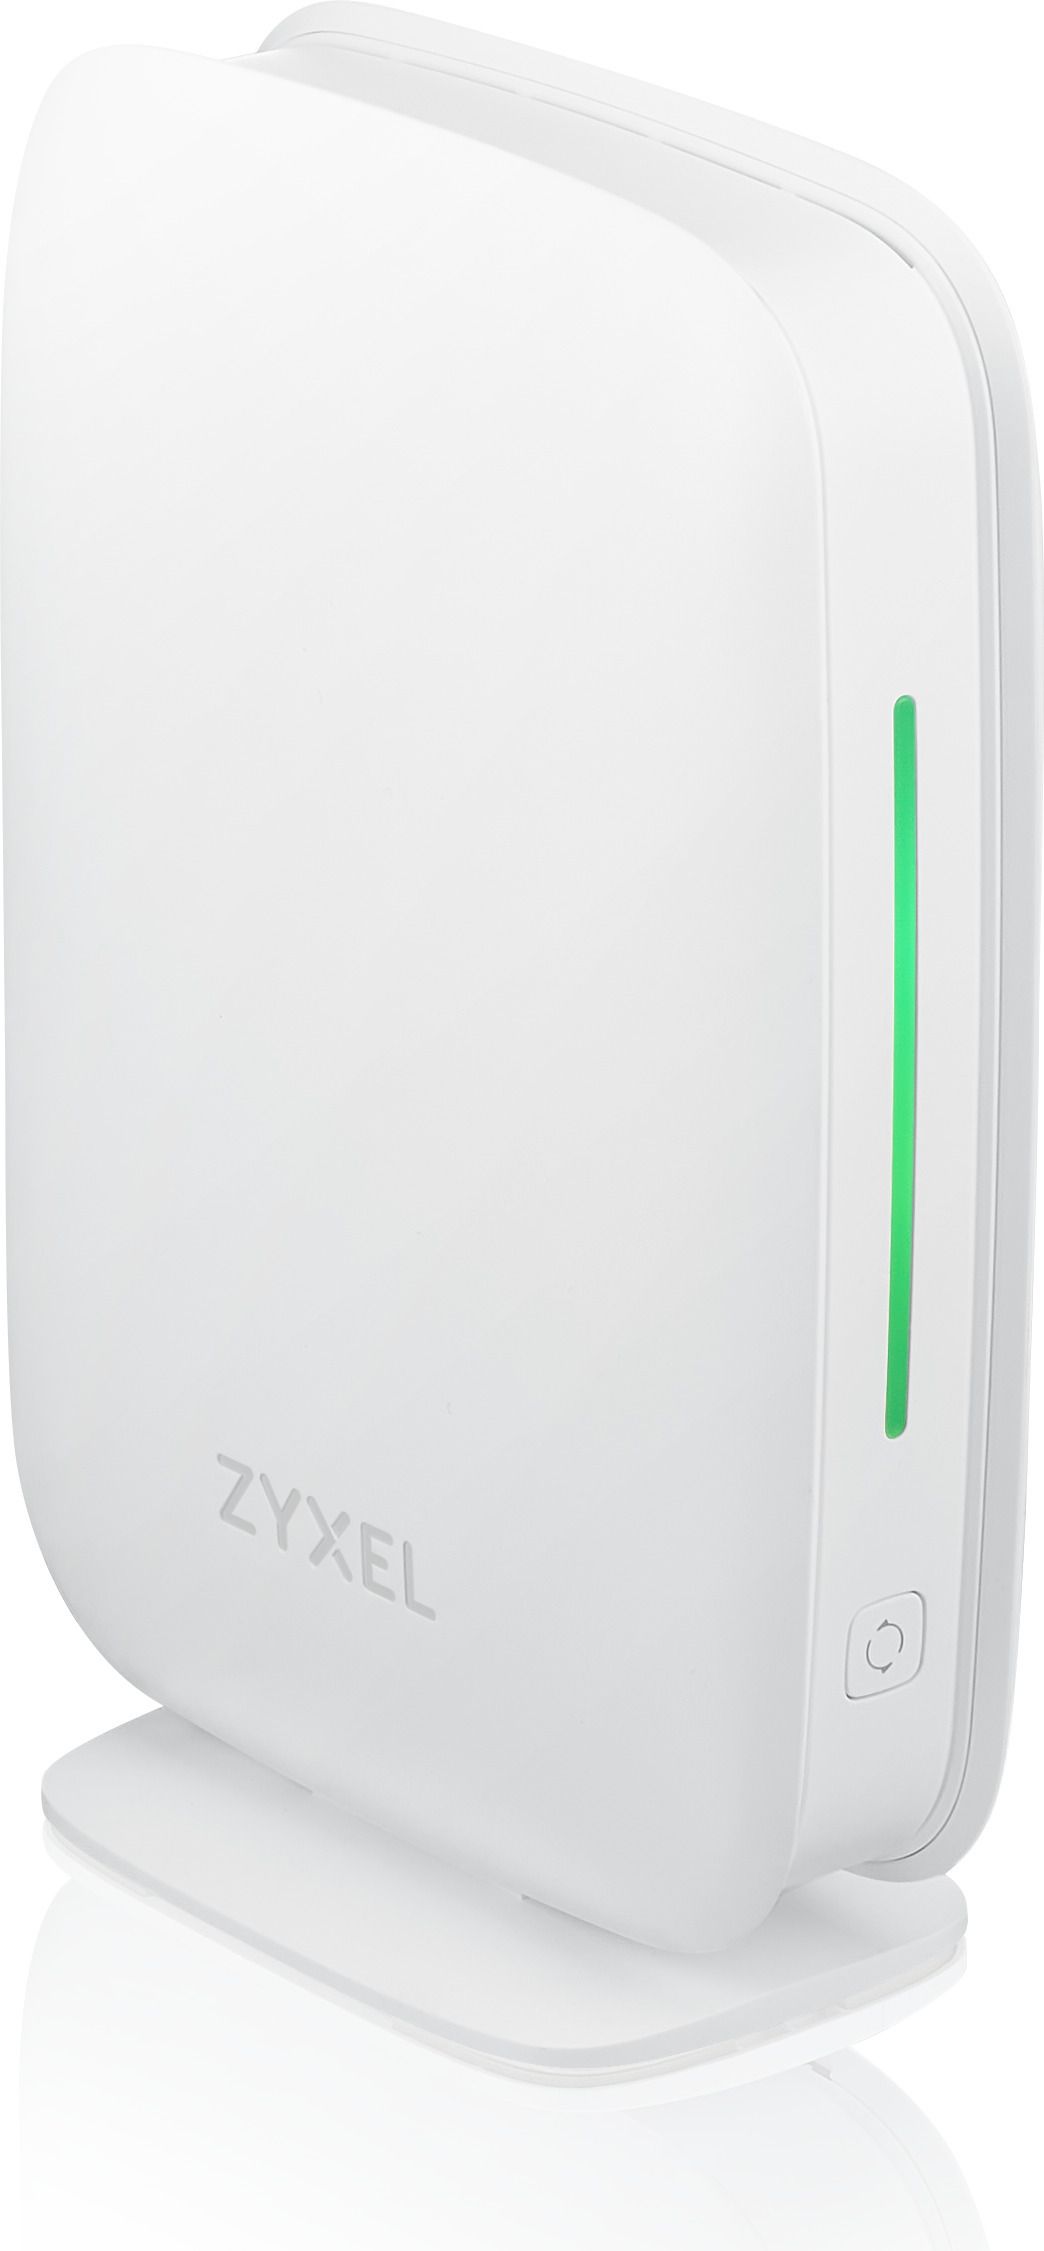 ZYXEL Multy M1 MESH AX1800 WiFi System SINGLE